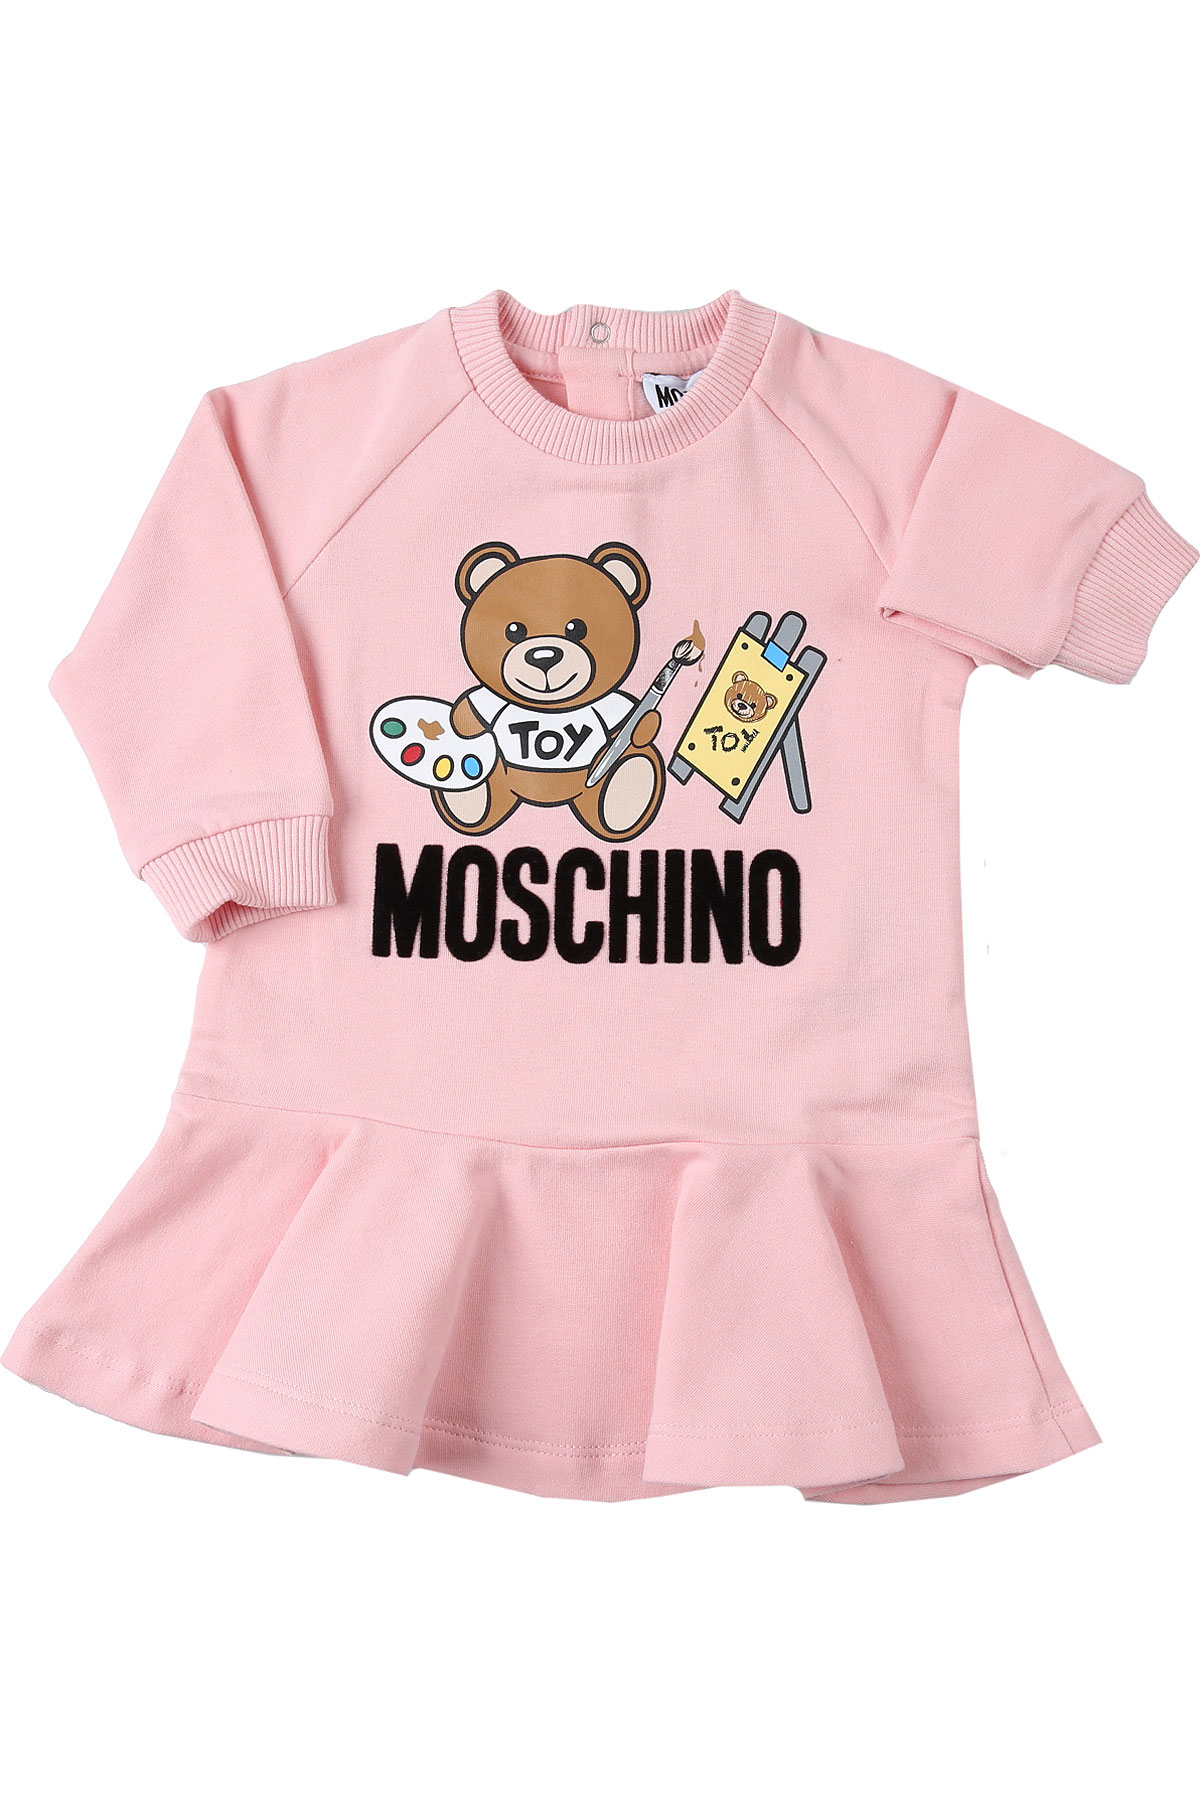 Moschino Baby Kleid für Mädchen Günstig im Sale, Baby-Rosa, Baumwolle, 2017, 18M 3Y